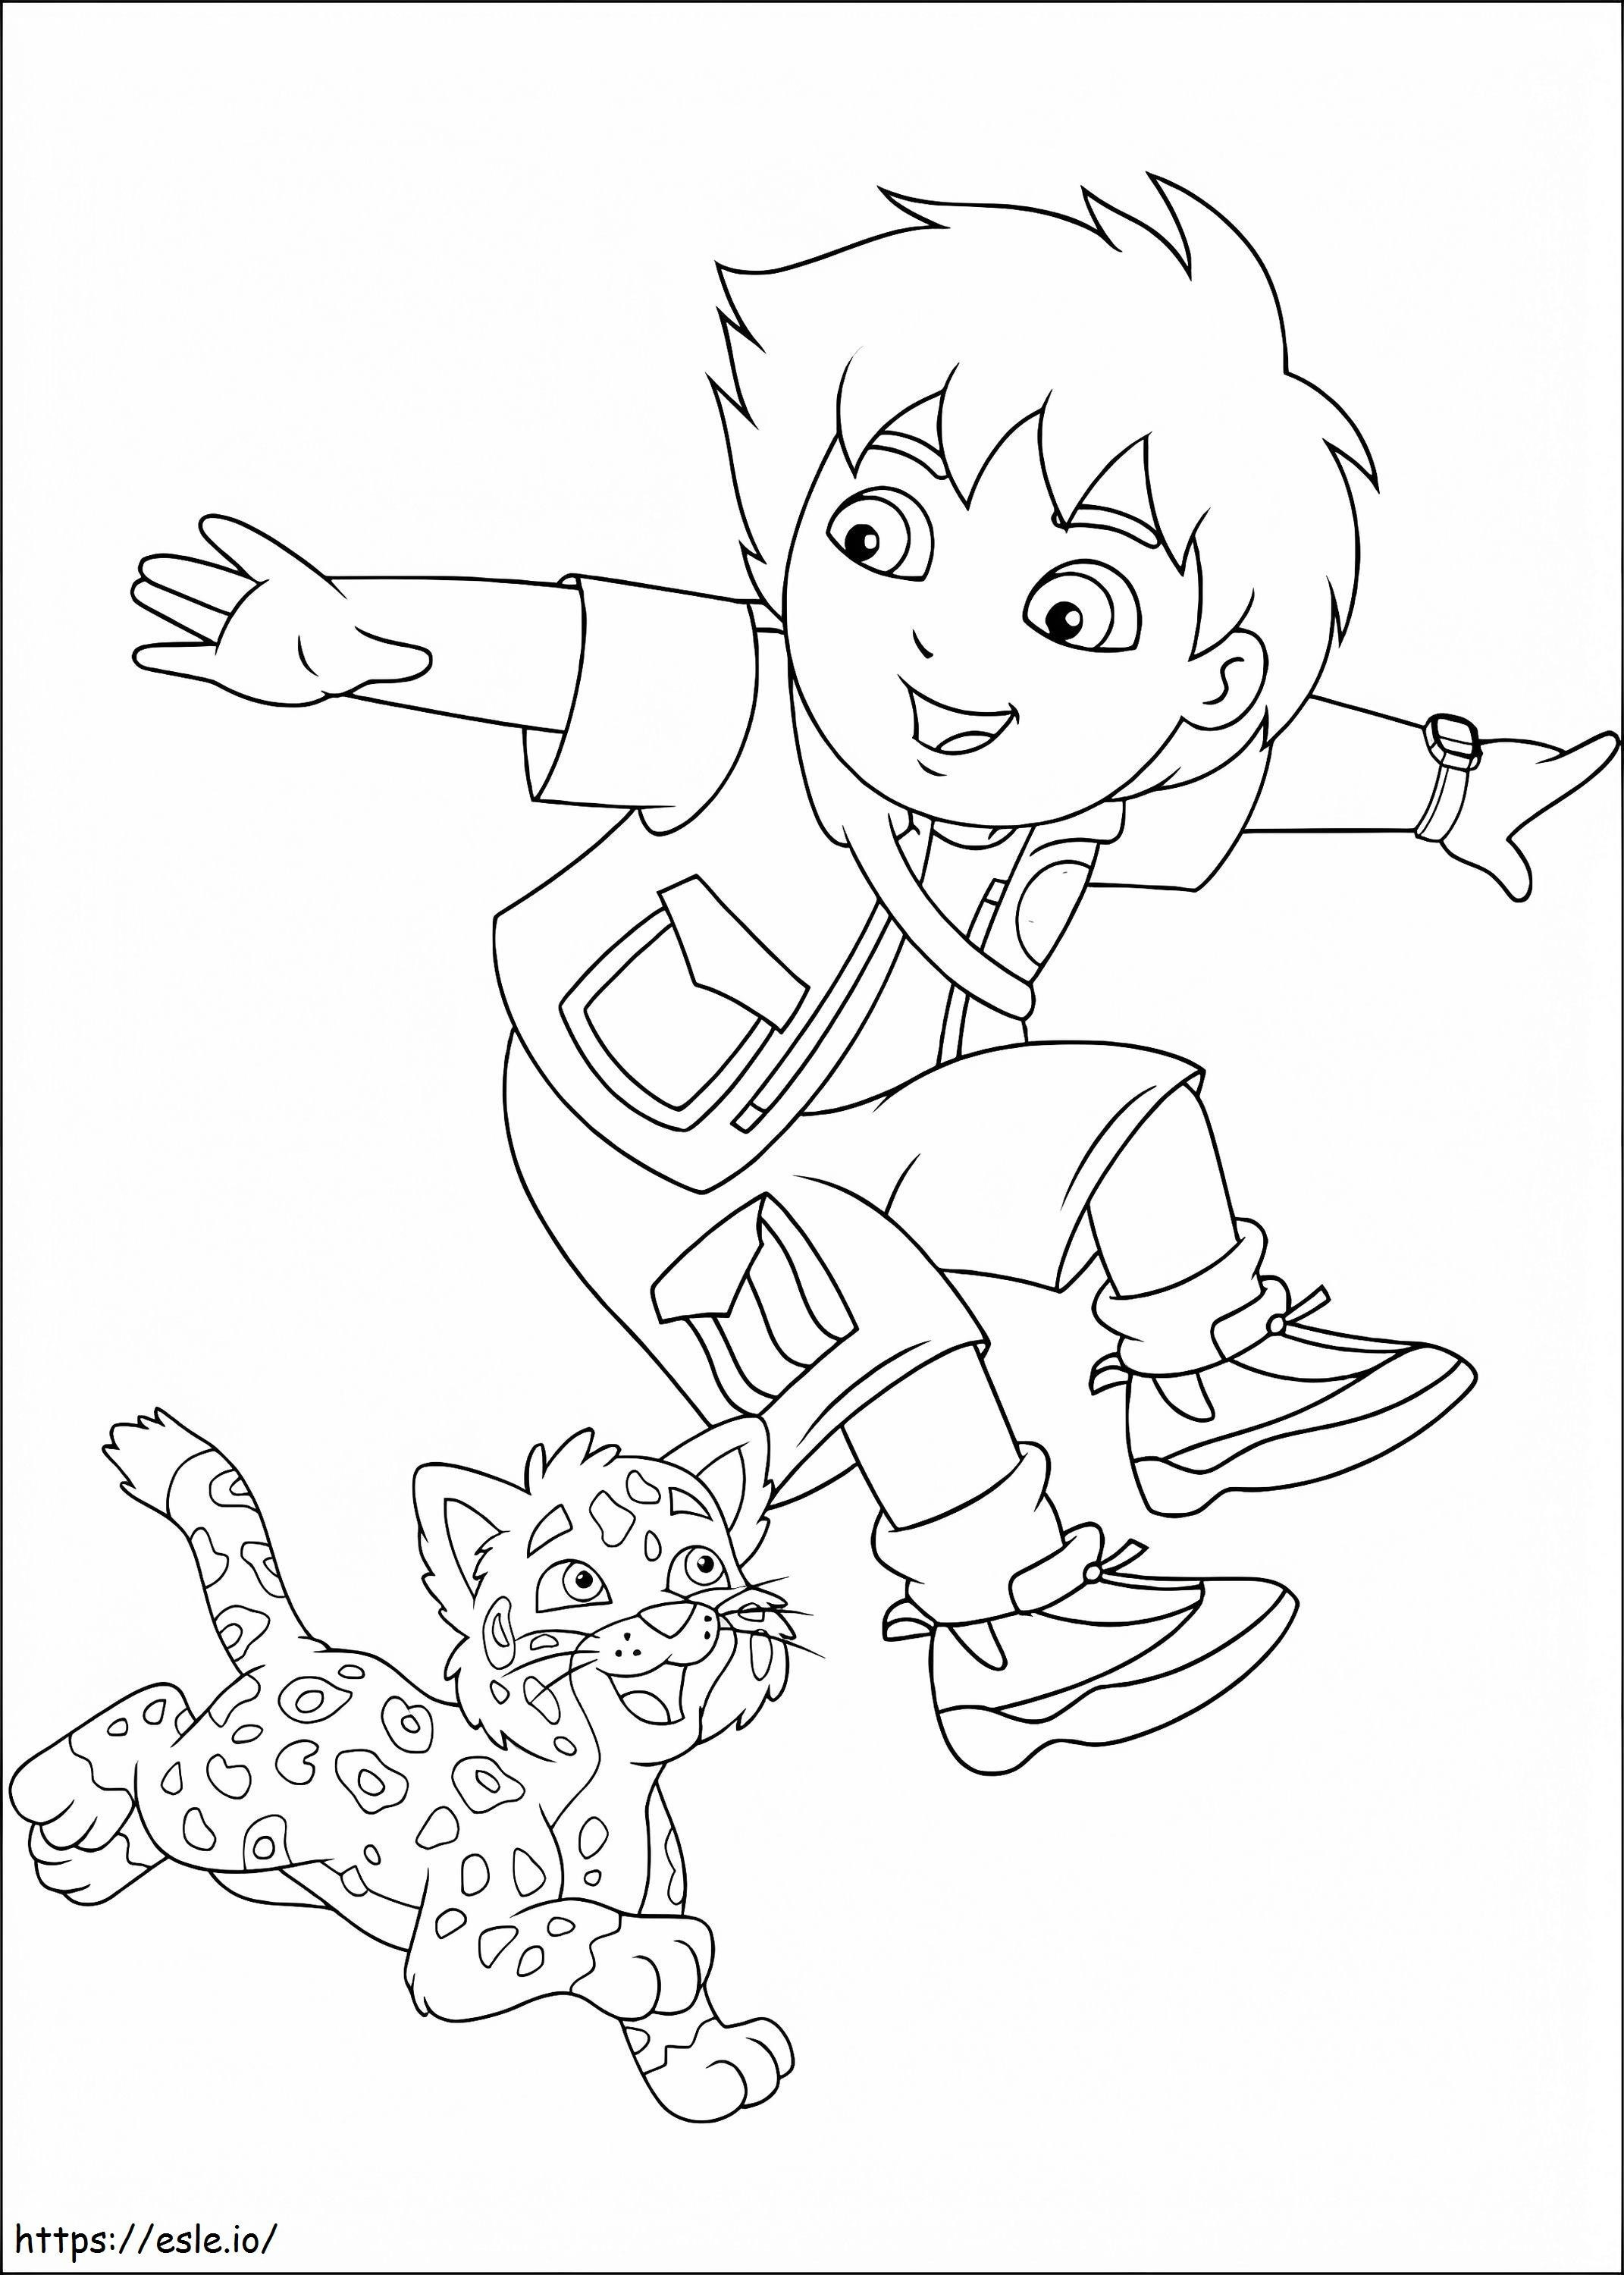 Diego e o bebê jaguar feliz para colorir